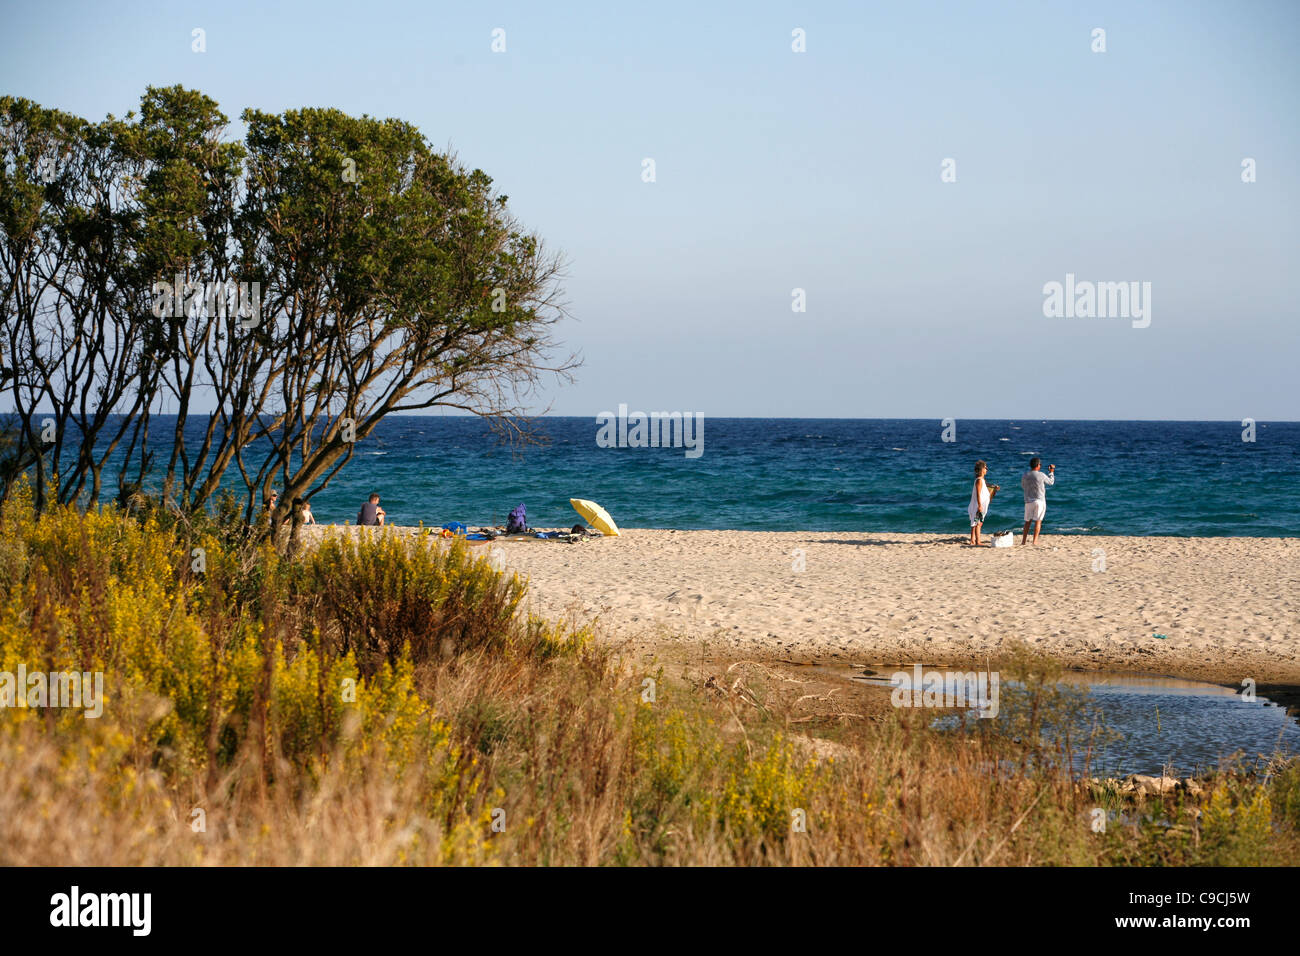 Cala Cartoe beach in the Orosei Bay, Sardinia, Italy. Stock Photo